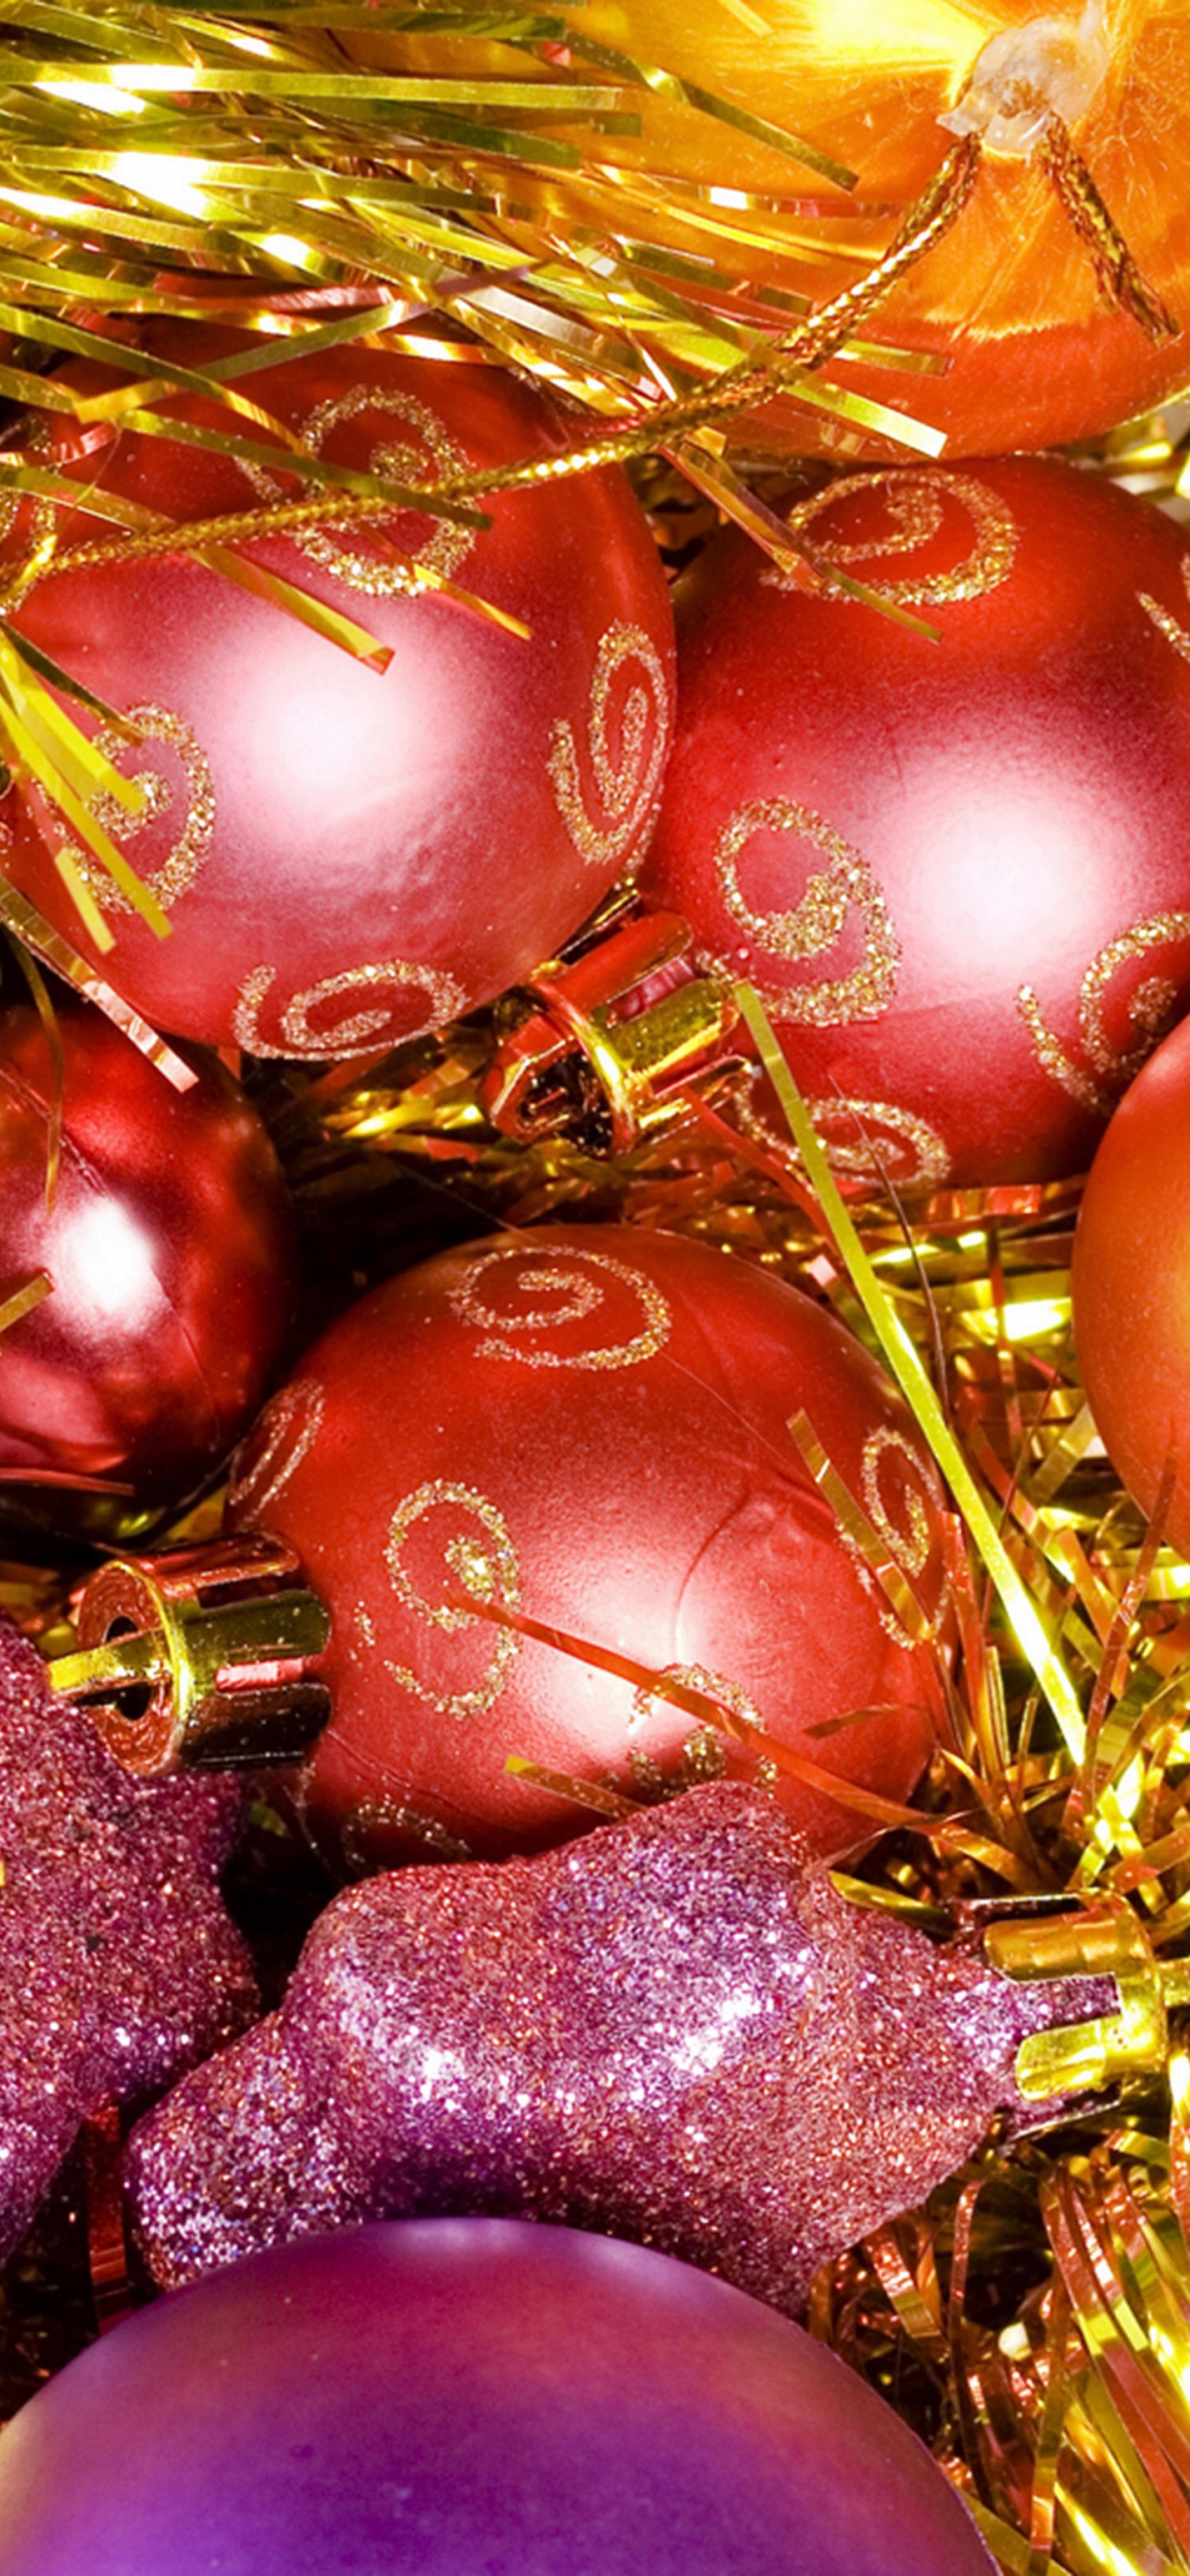 圣诞节那天, 圣诞节的装饰品, 圣诞树, 新的一年, 假日 壁纸 1242x2688 允许